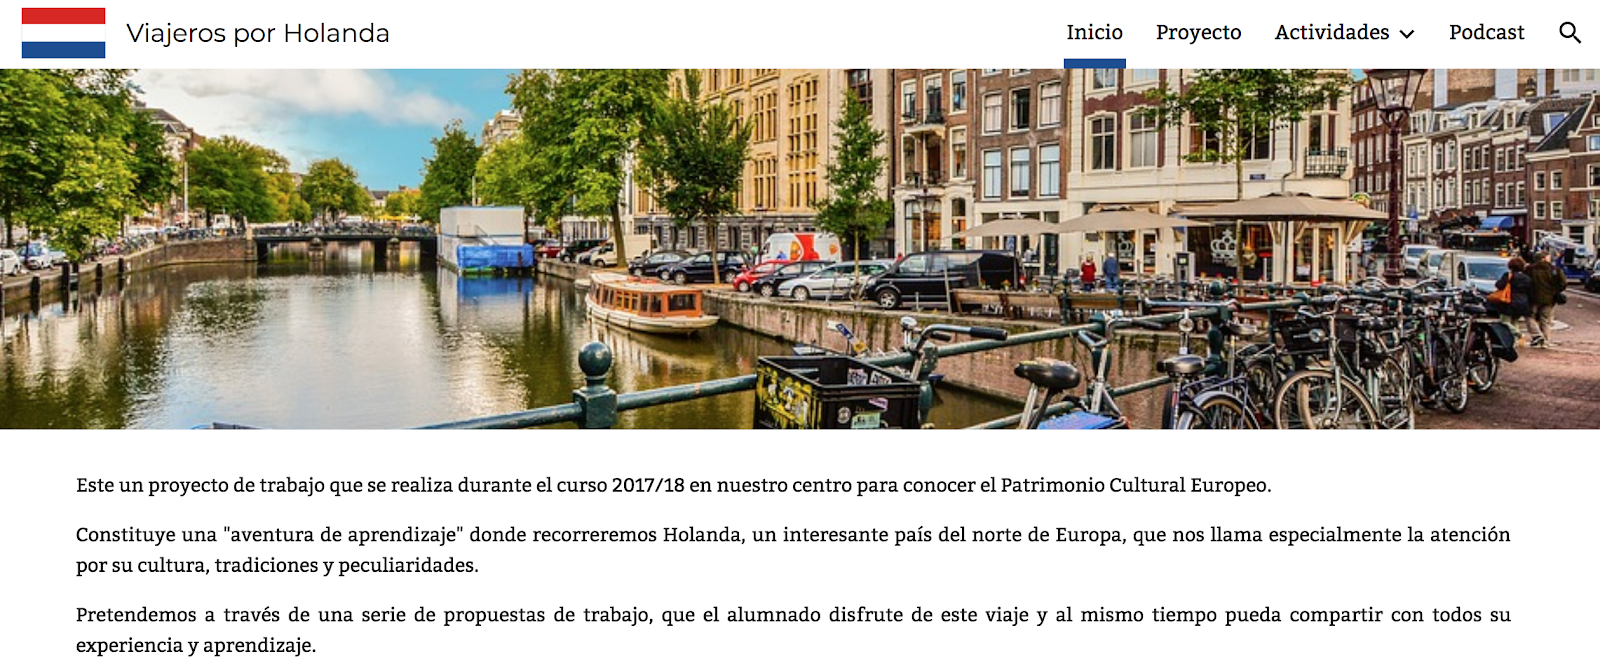 Proyecto: Viajeros por Holanda